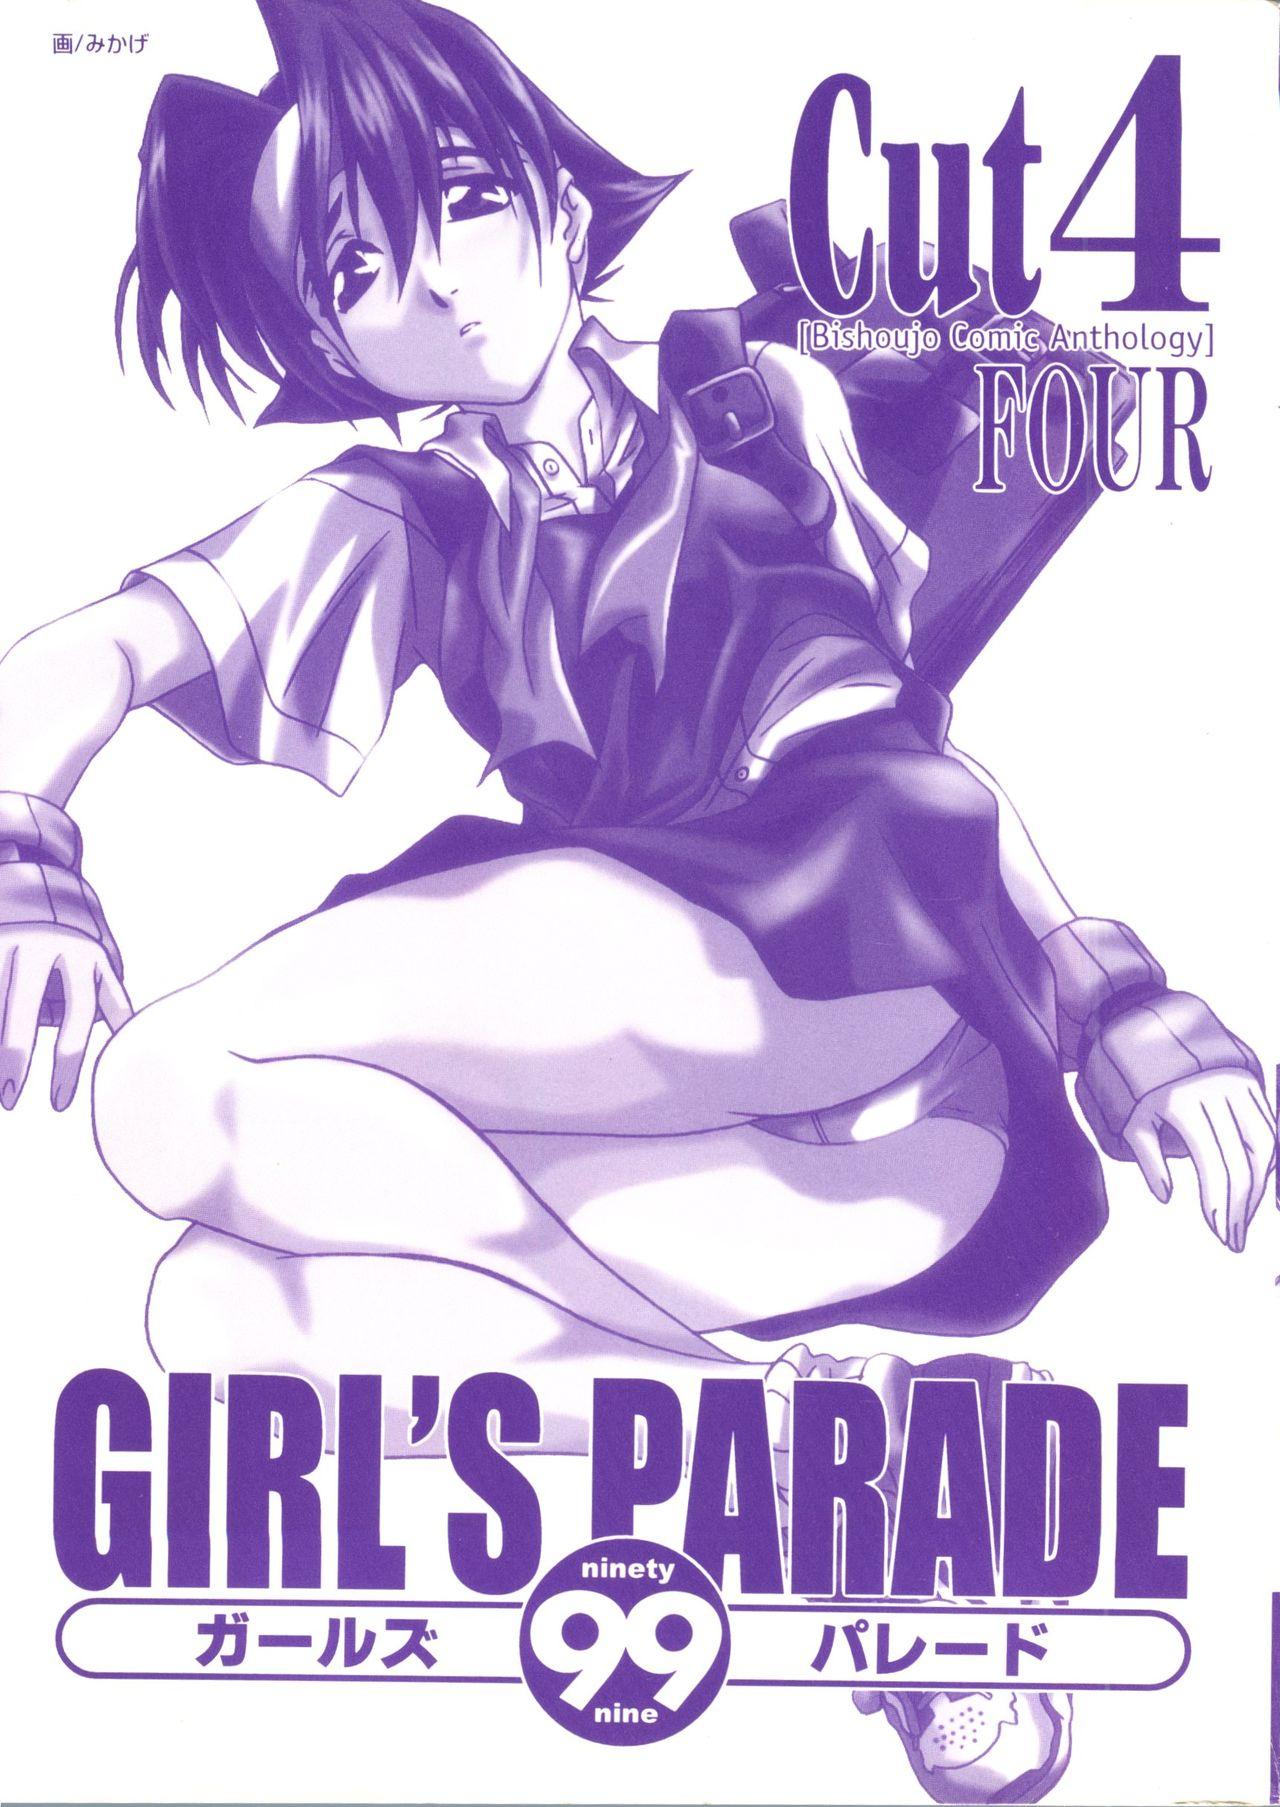 Uncensored Girl's Parade 99 Cut 4 - Samurai spirits Rival schools Revolutionary girl utena Star gladiator Girl Fuck - Page 2